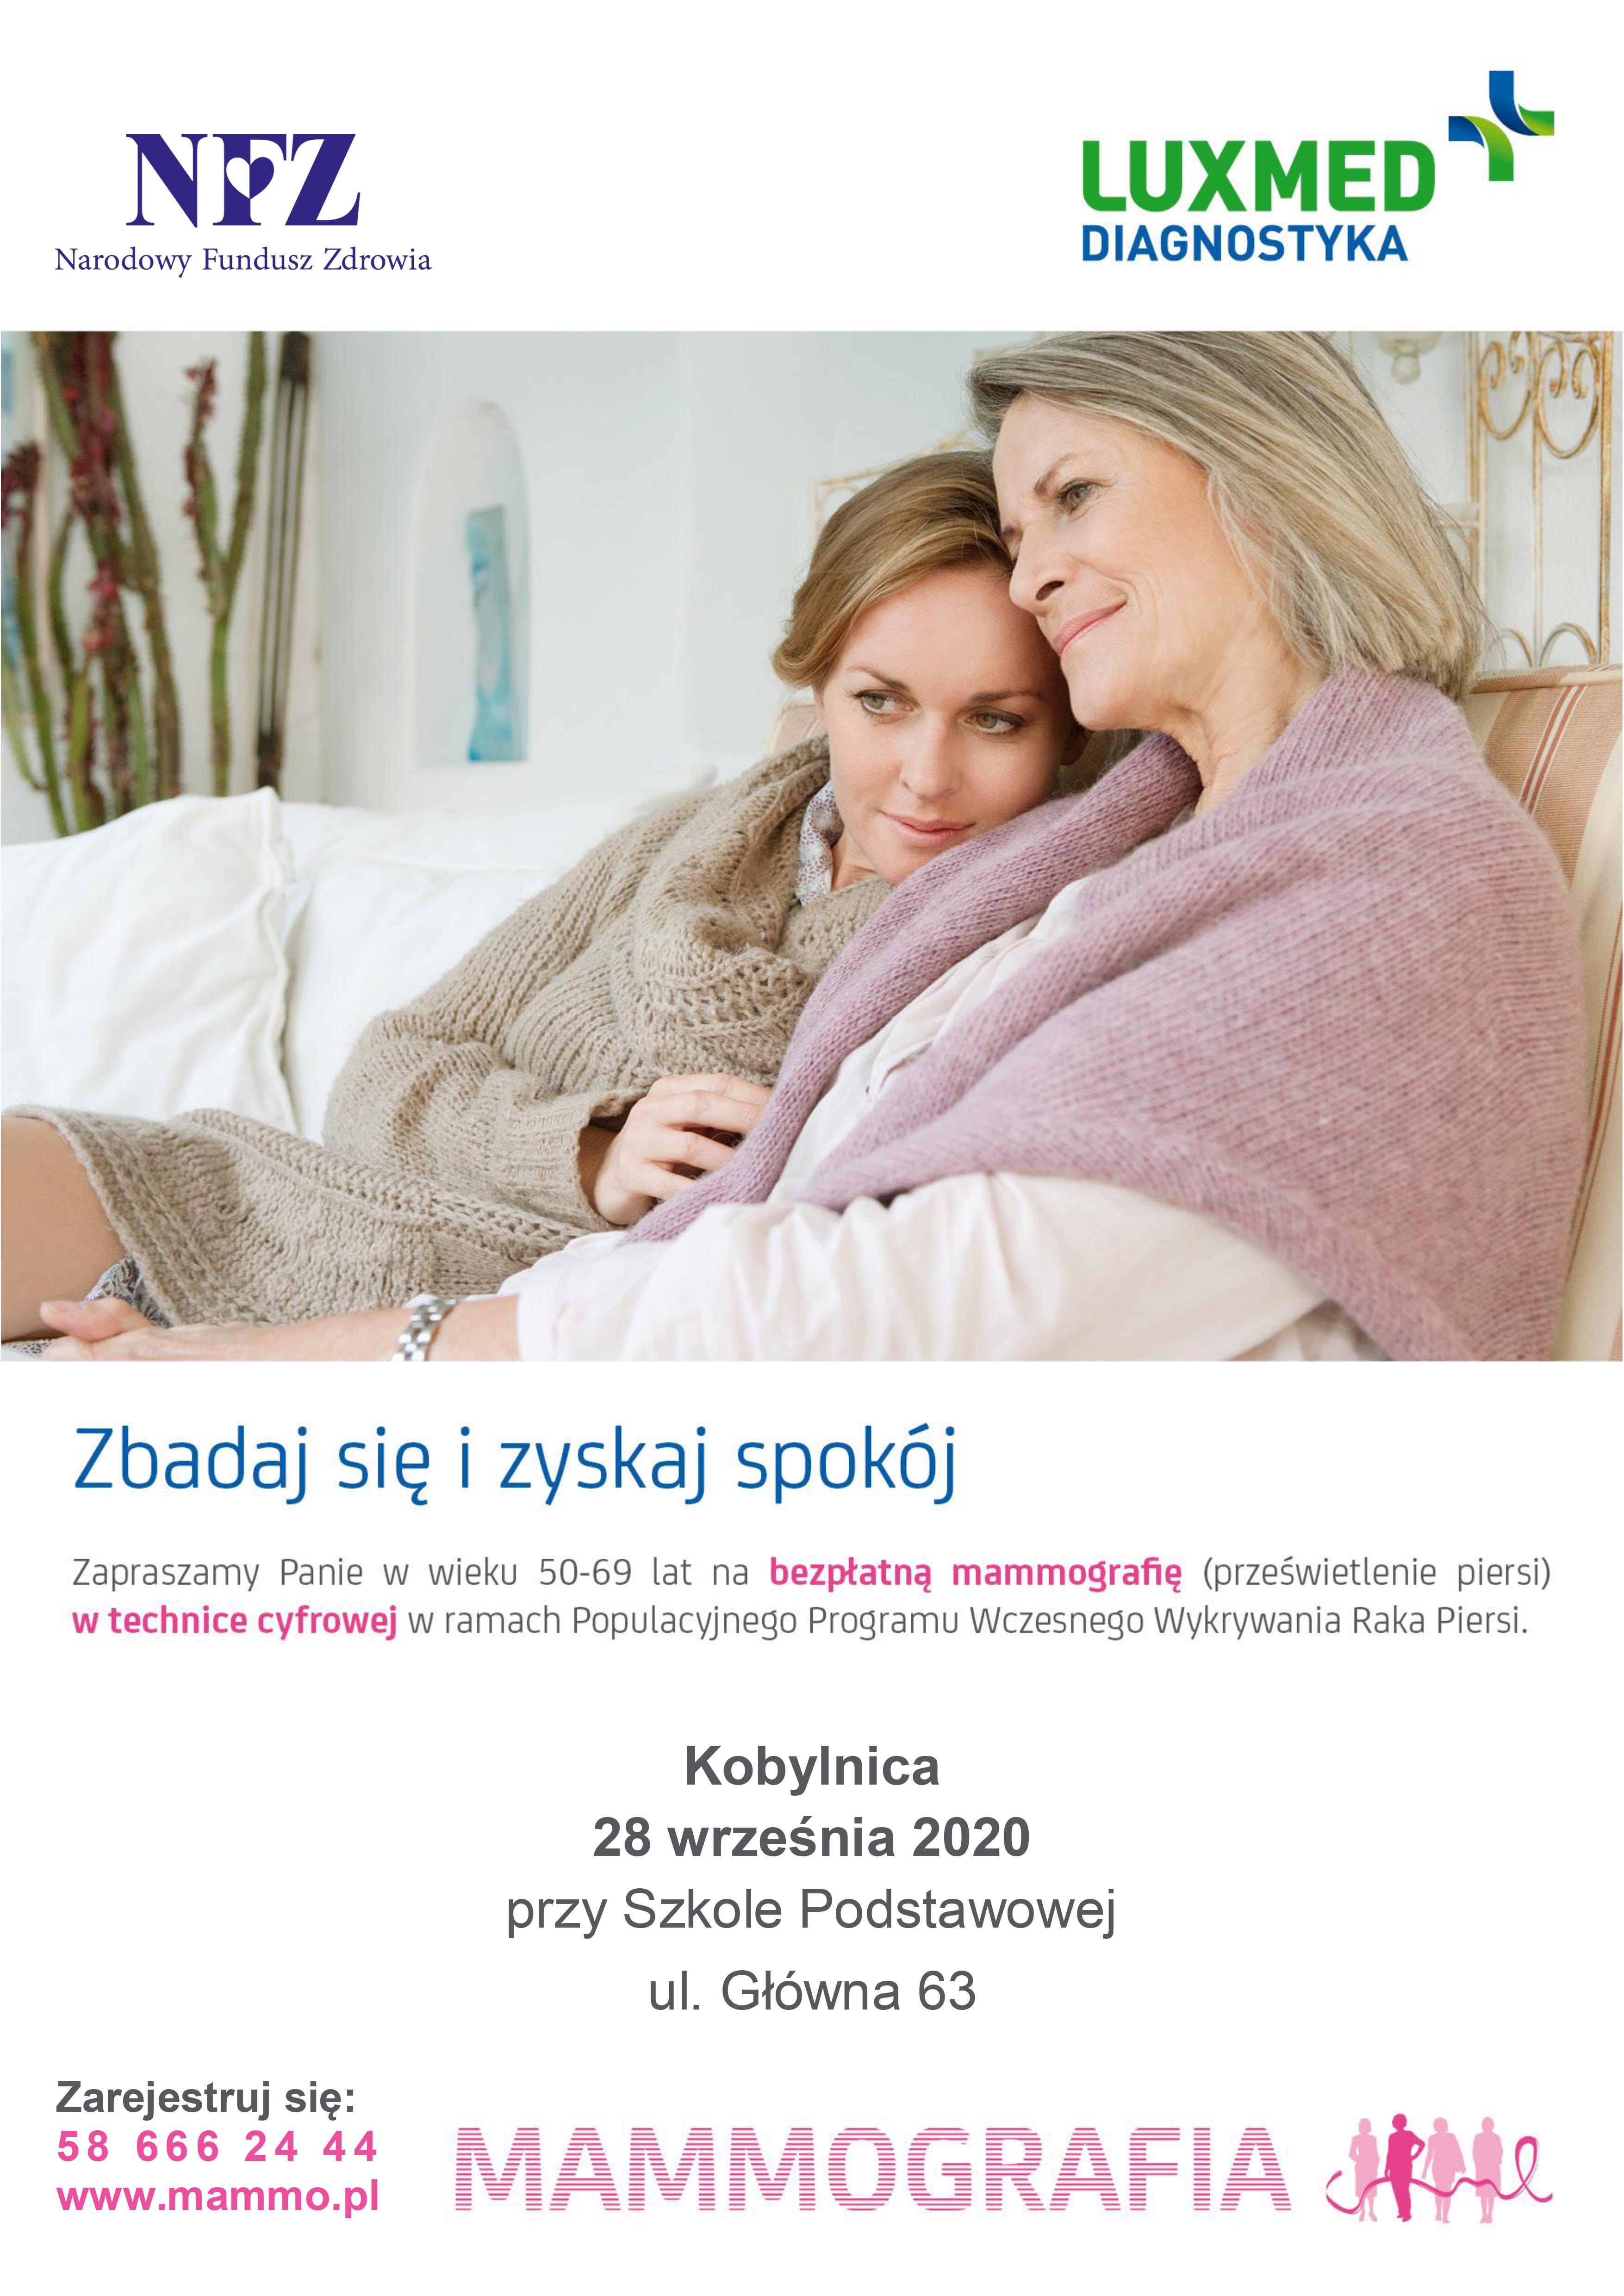 plakat przedstawiający informacje na temat badania mammograficznego dla mieszkanek Gminy Kobylnica